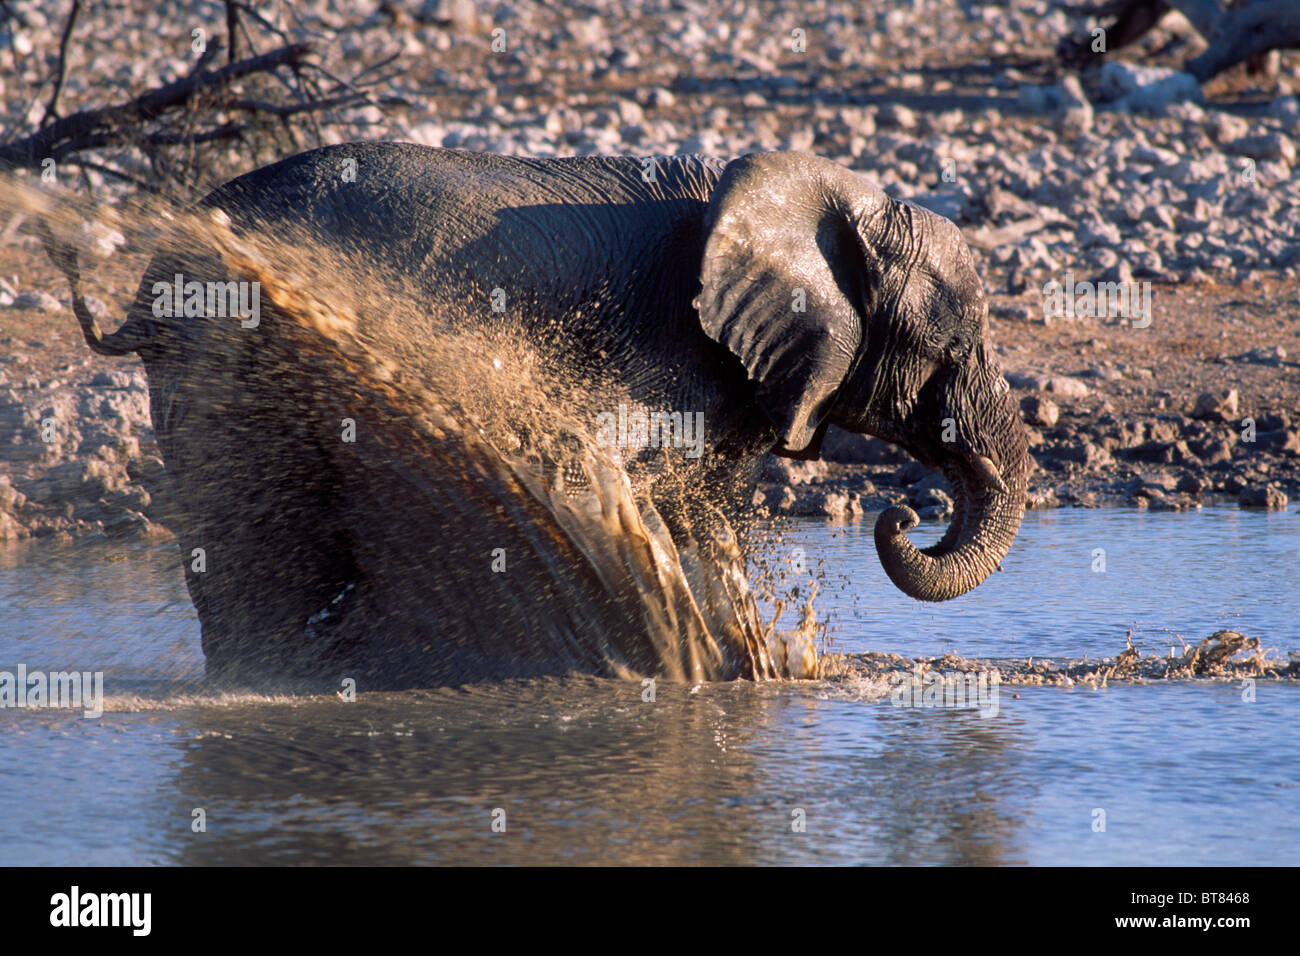 Bush Elefante africano (Loxodonta africana), bañarse en un abrevadero, el Parque Nacional de Etosha, Namibia, África Foto de stock